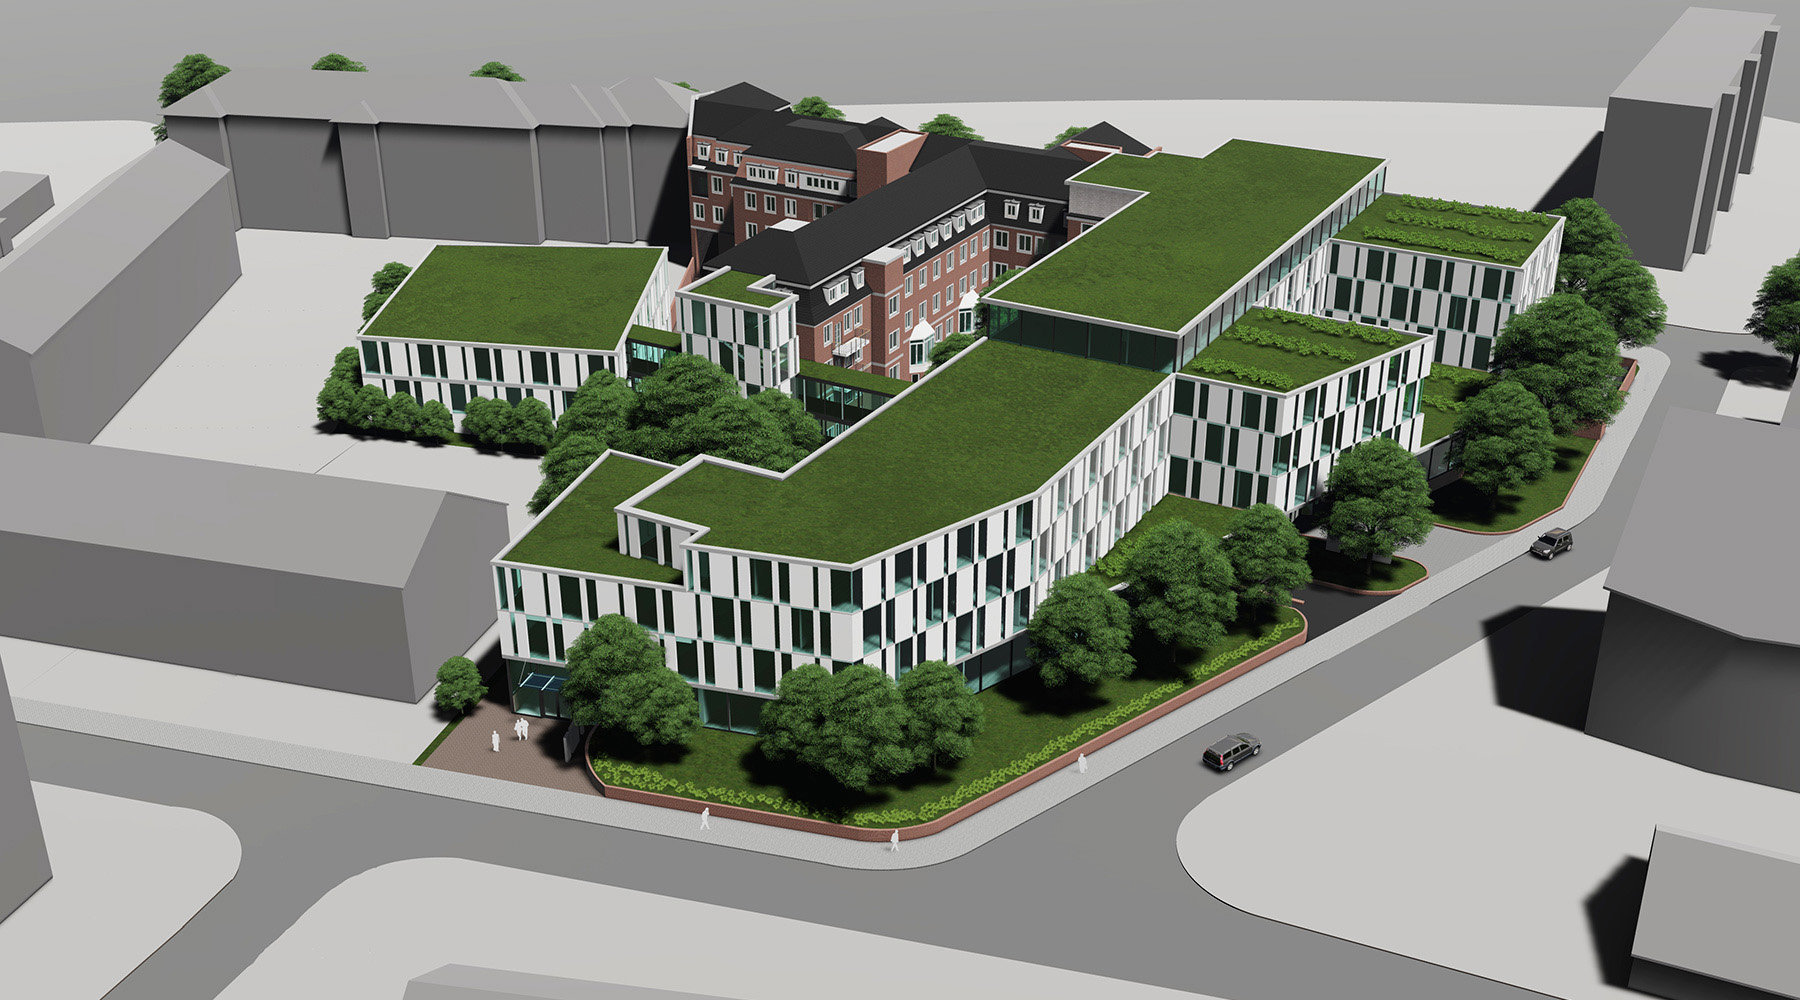 Klinikstandort in Düsseldorf. 3D-Modell. Weiße Gebäude mit grünbewachsenen Flachdächern.